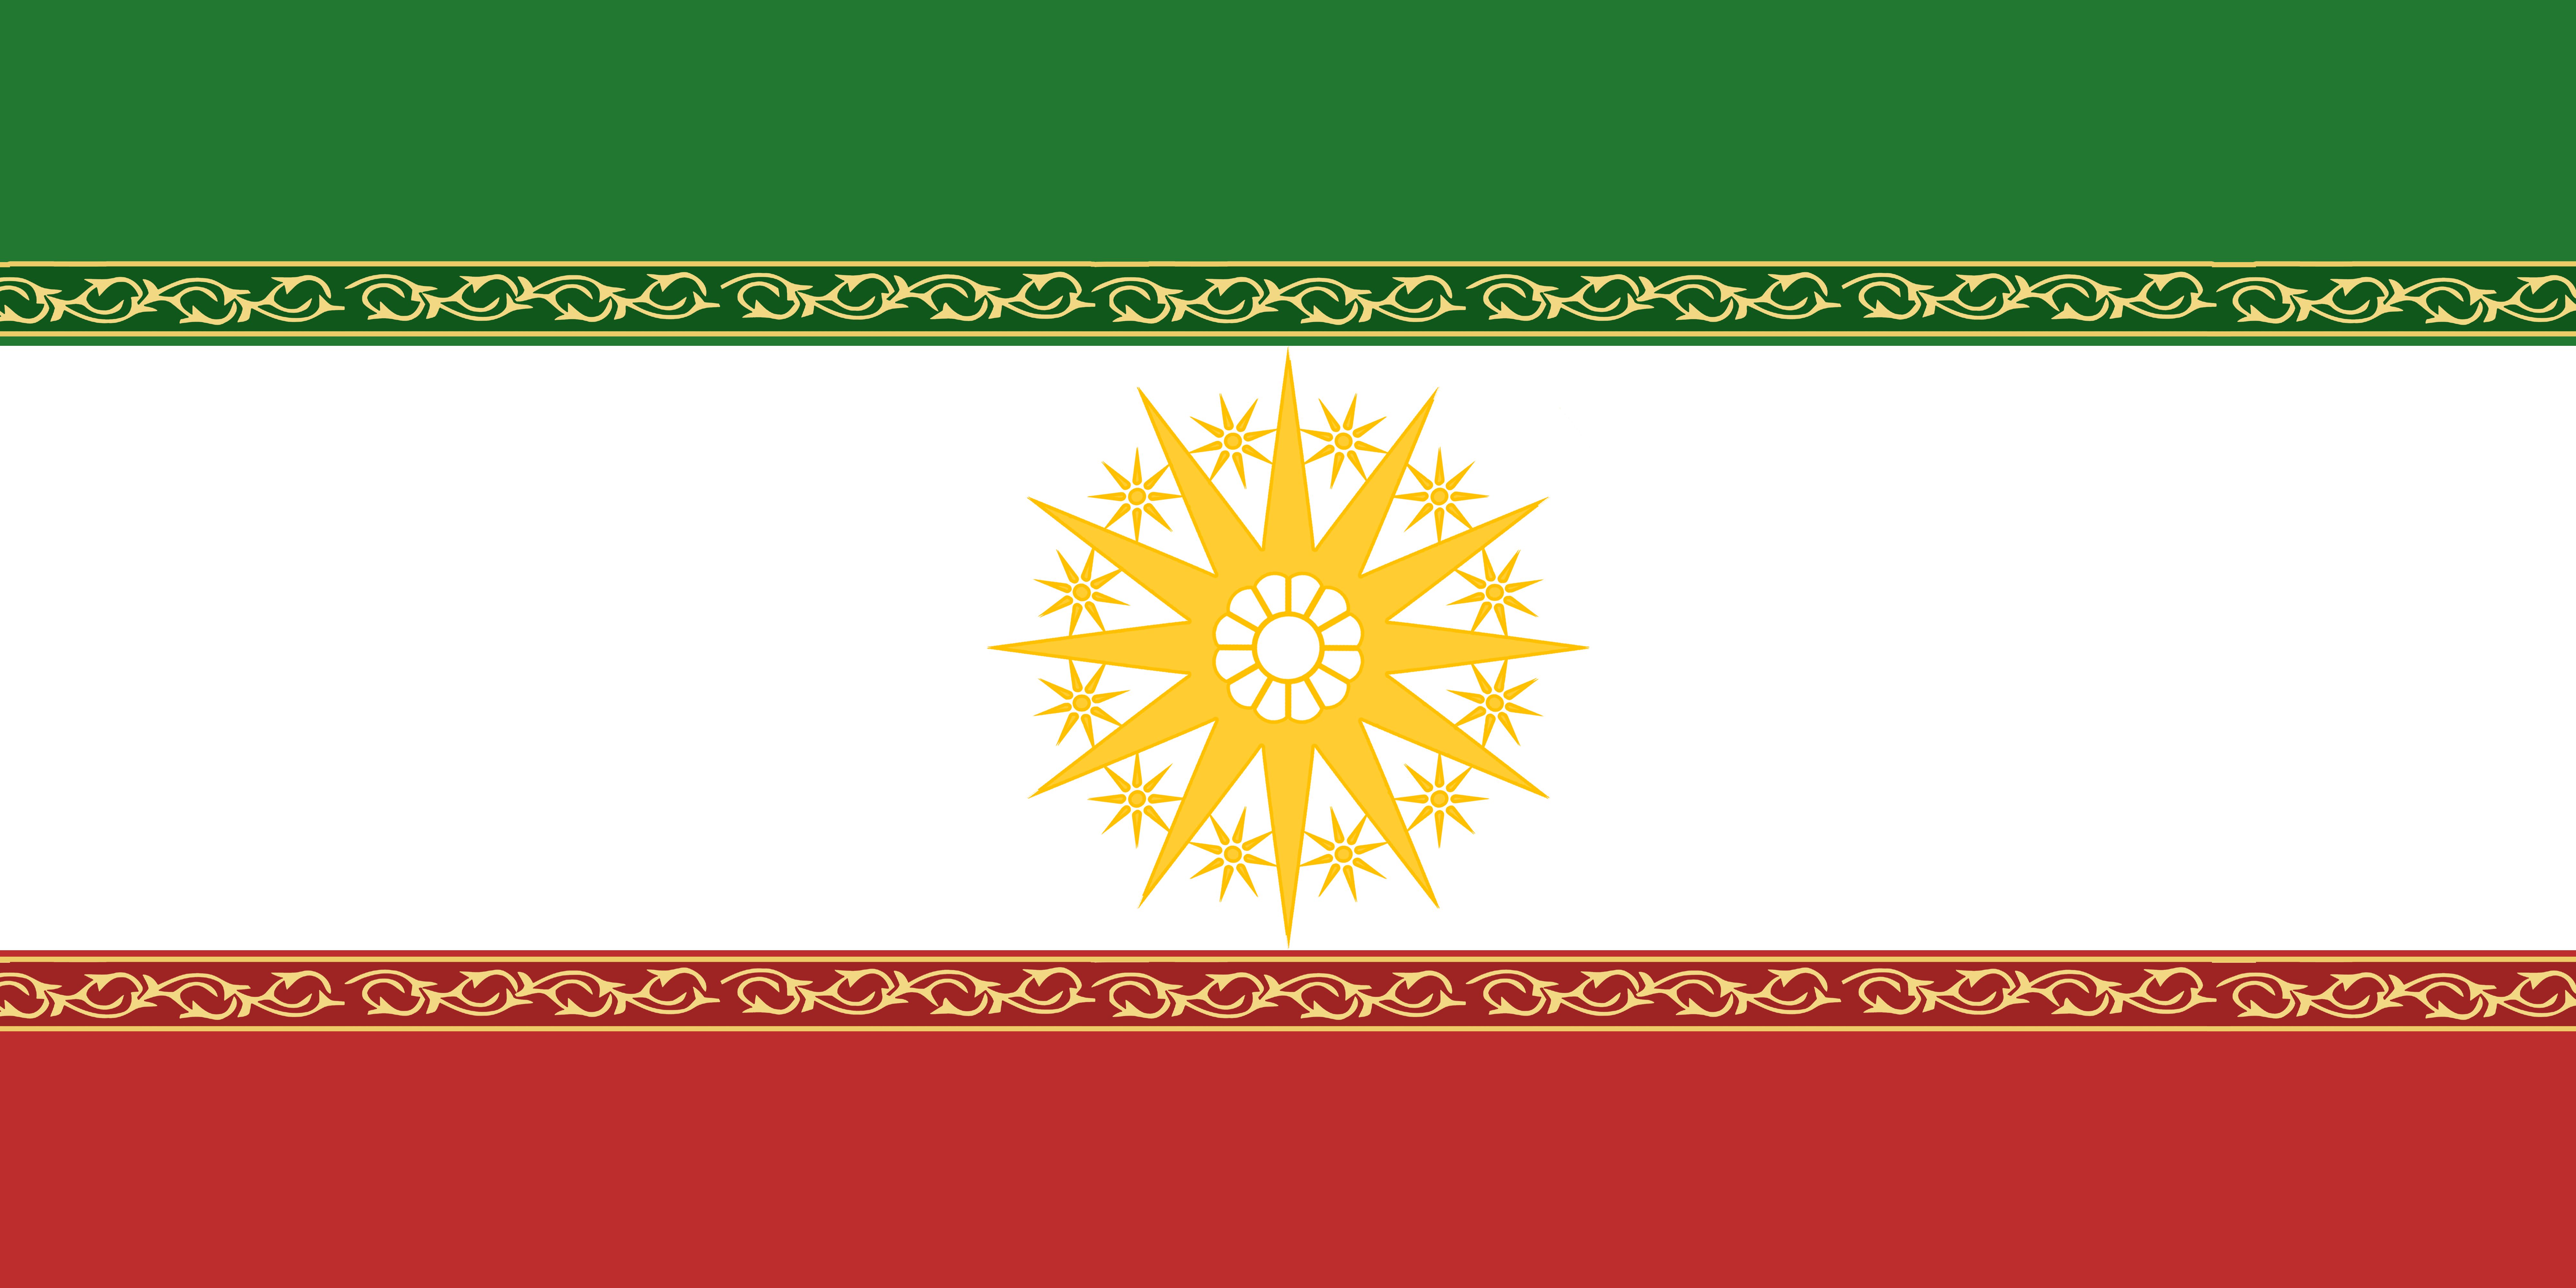 Скачать обои бесплатно Флаги, Разное, Флаг, Эмблема, Флаг Ирана картинка на рабочий стол ПК